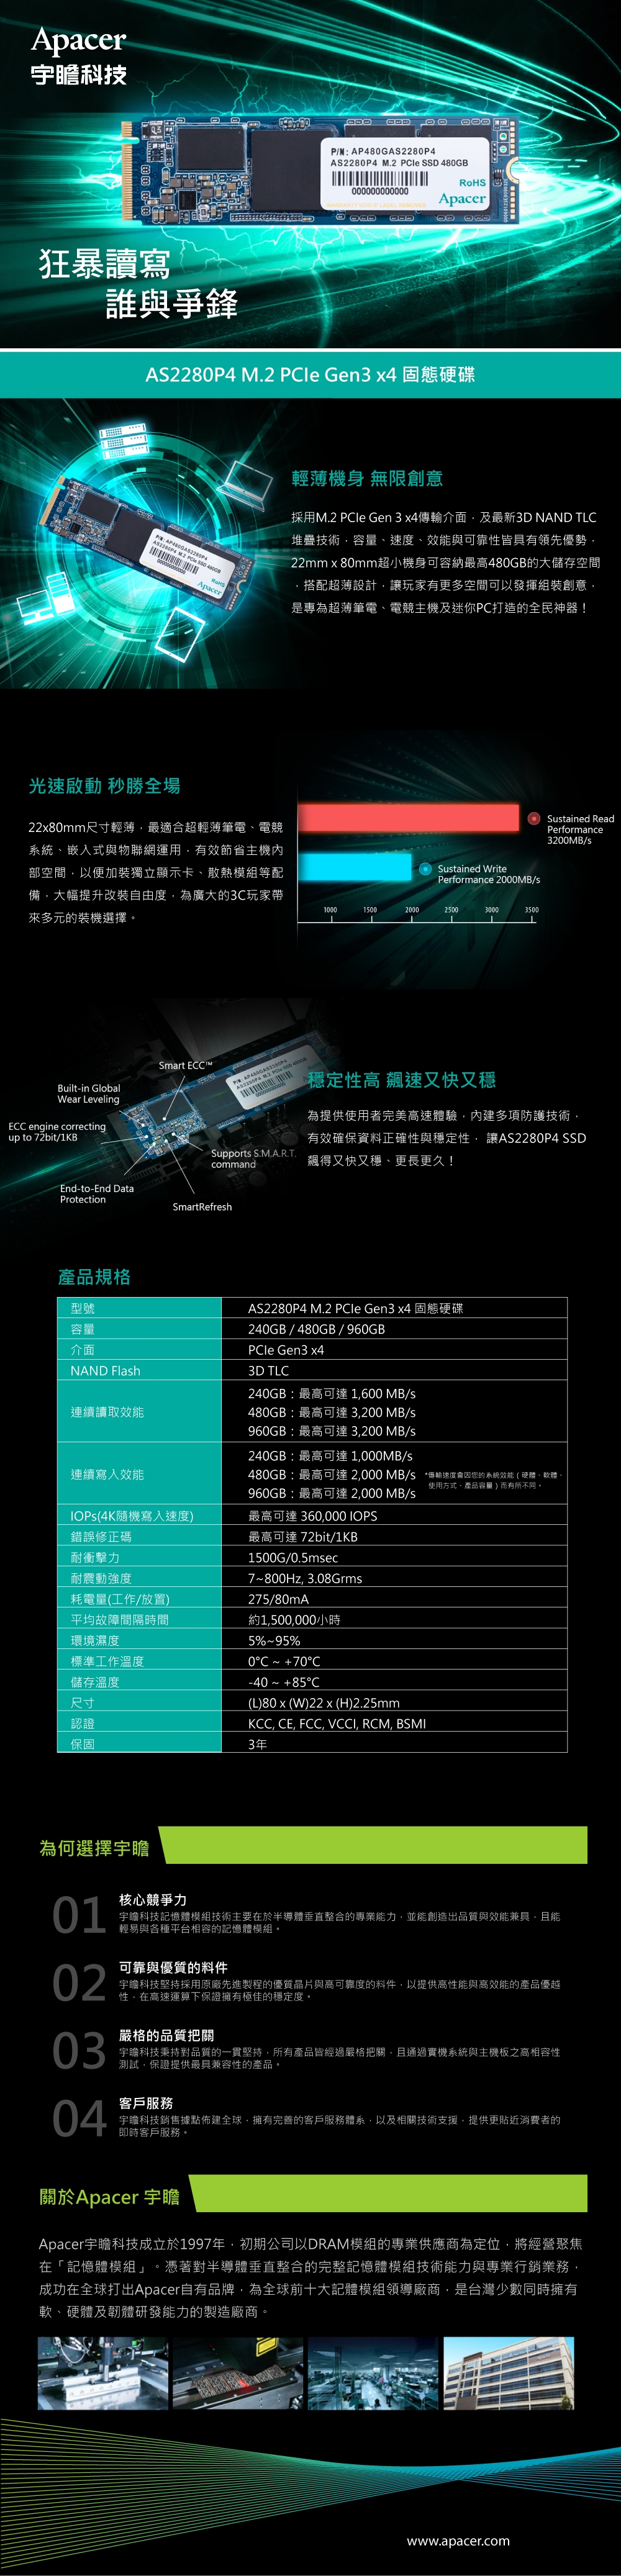 APACER AS2280P4 M.2 PCIe Gen3 x4 240G固態硬碟